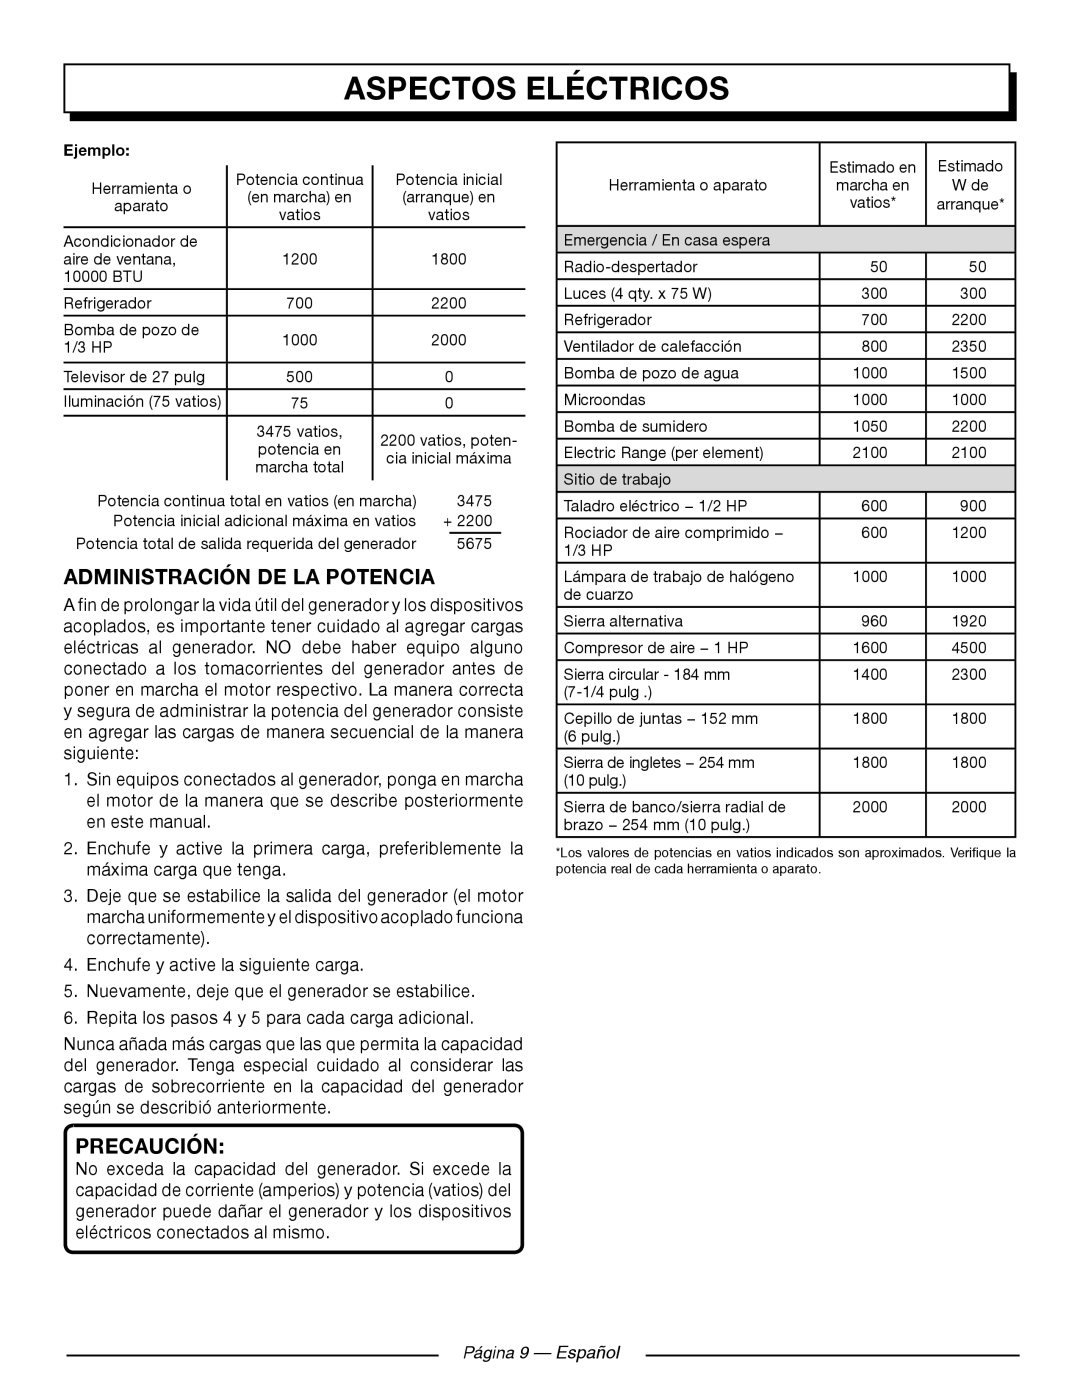 Homelite UT905011 manuel dutilisation Administración De La Potencia, Página 9 — Español, Aspectos Eléctricos, Precaución 